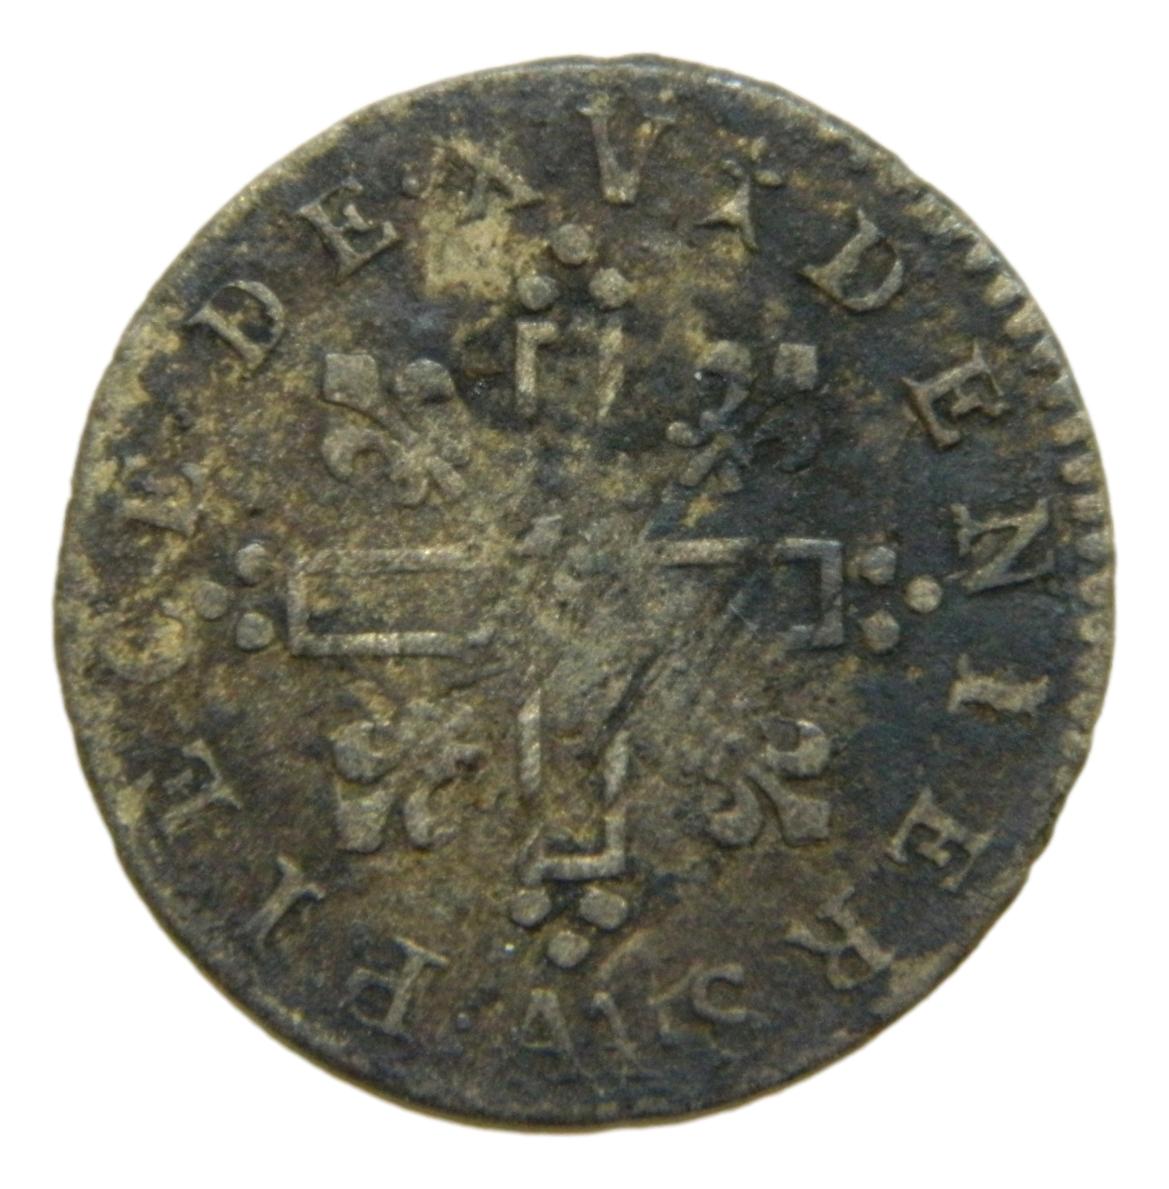 1711 AA - FRANCIA - 15 DENIERS - LOUIS XIV - BILLON - BC - S9/421